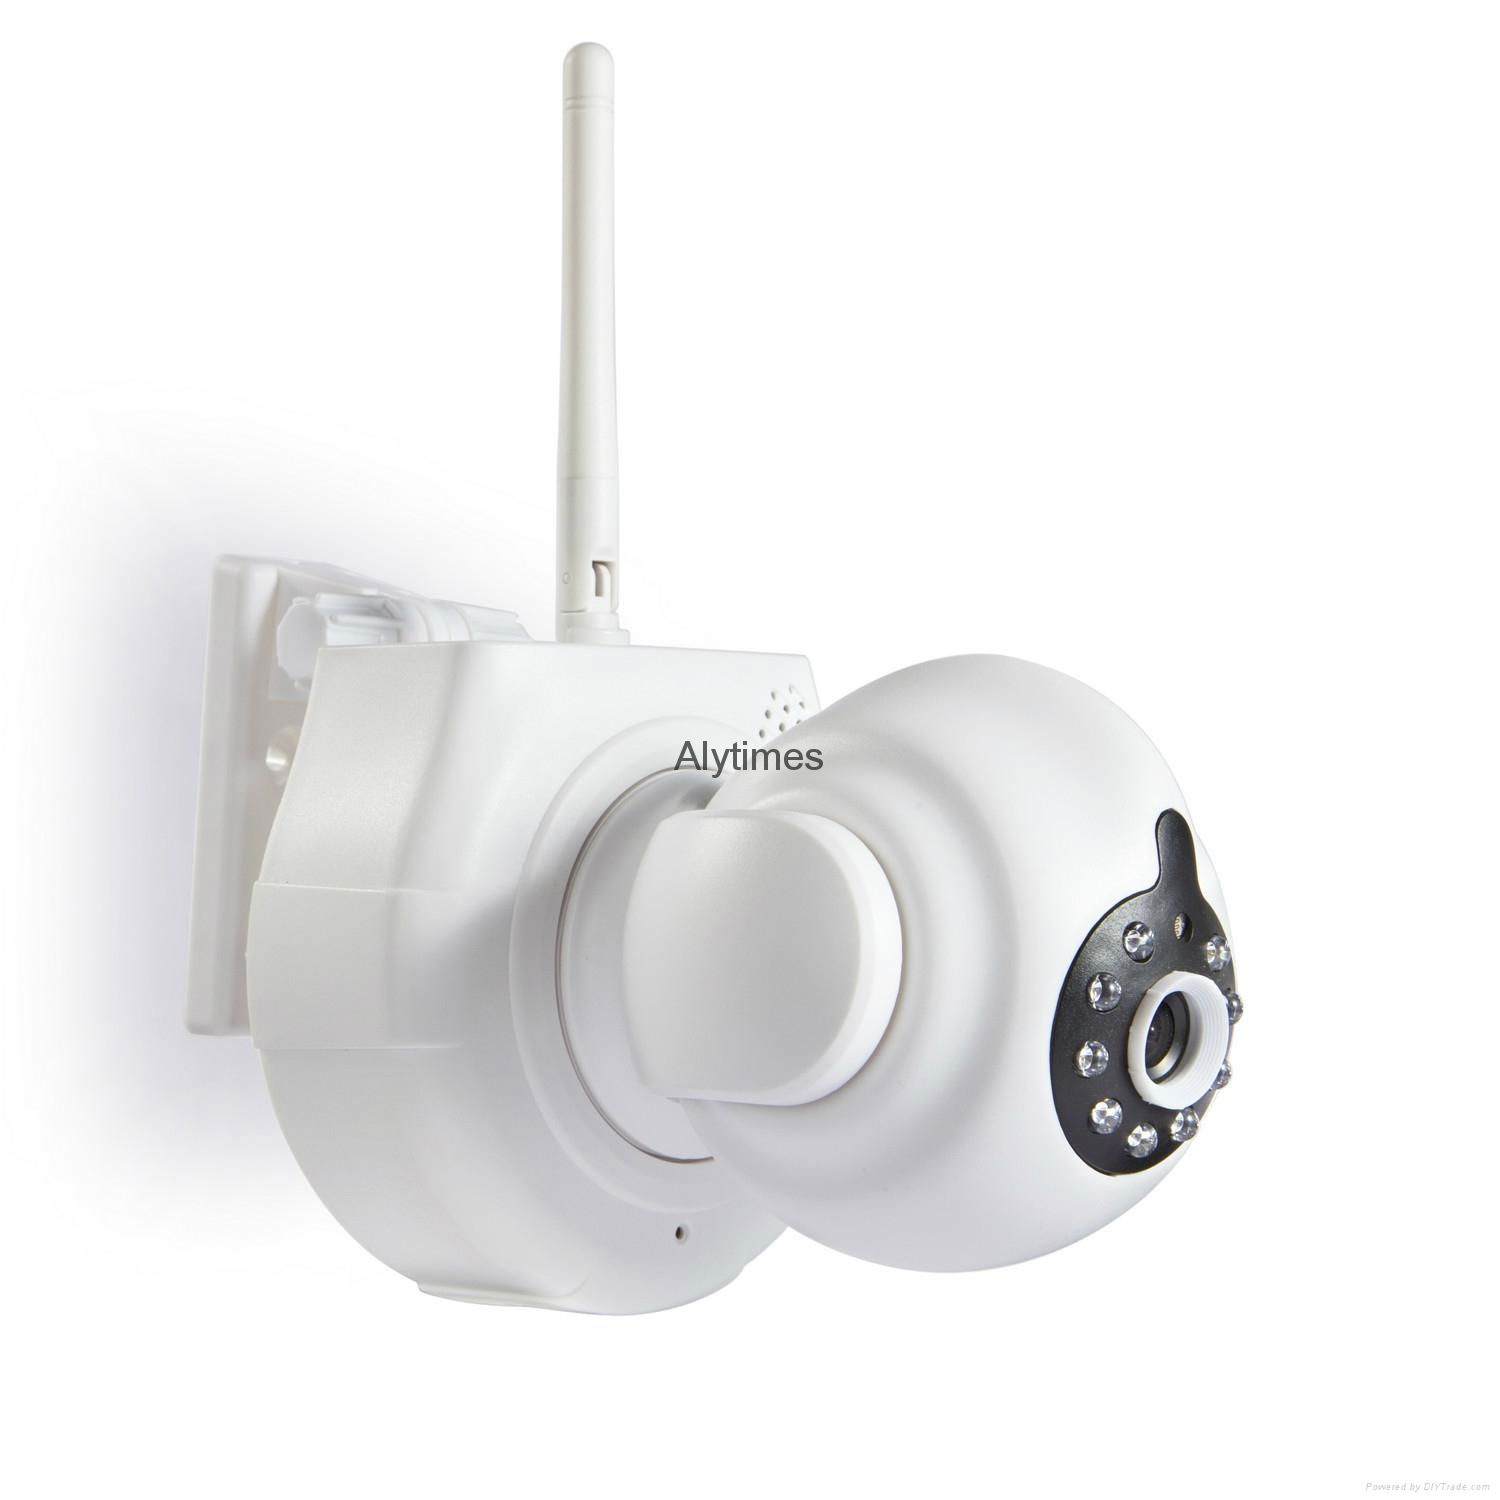 Alytimes Aly008 HD indoor 2-way audio video surveillance ip network camera 720p  2